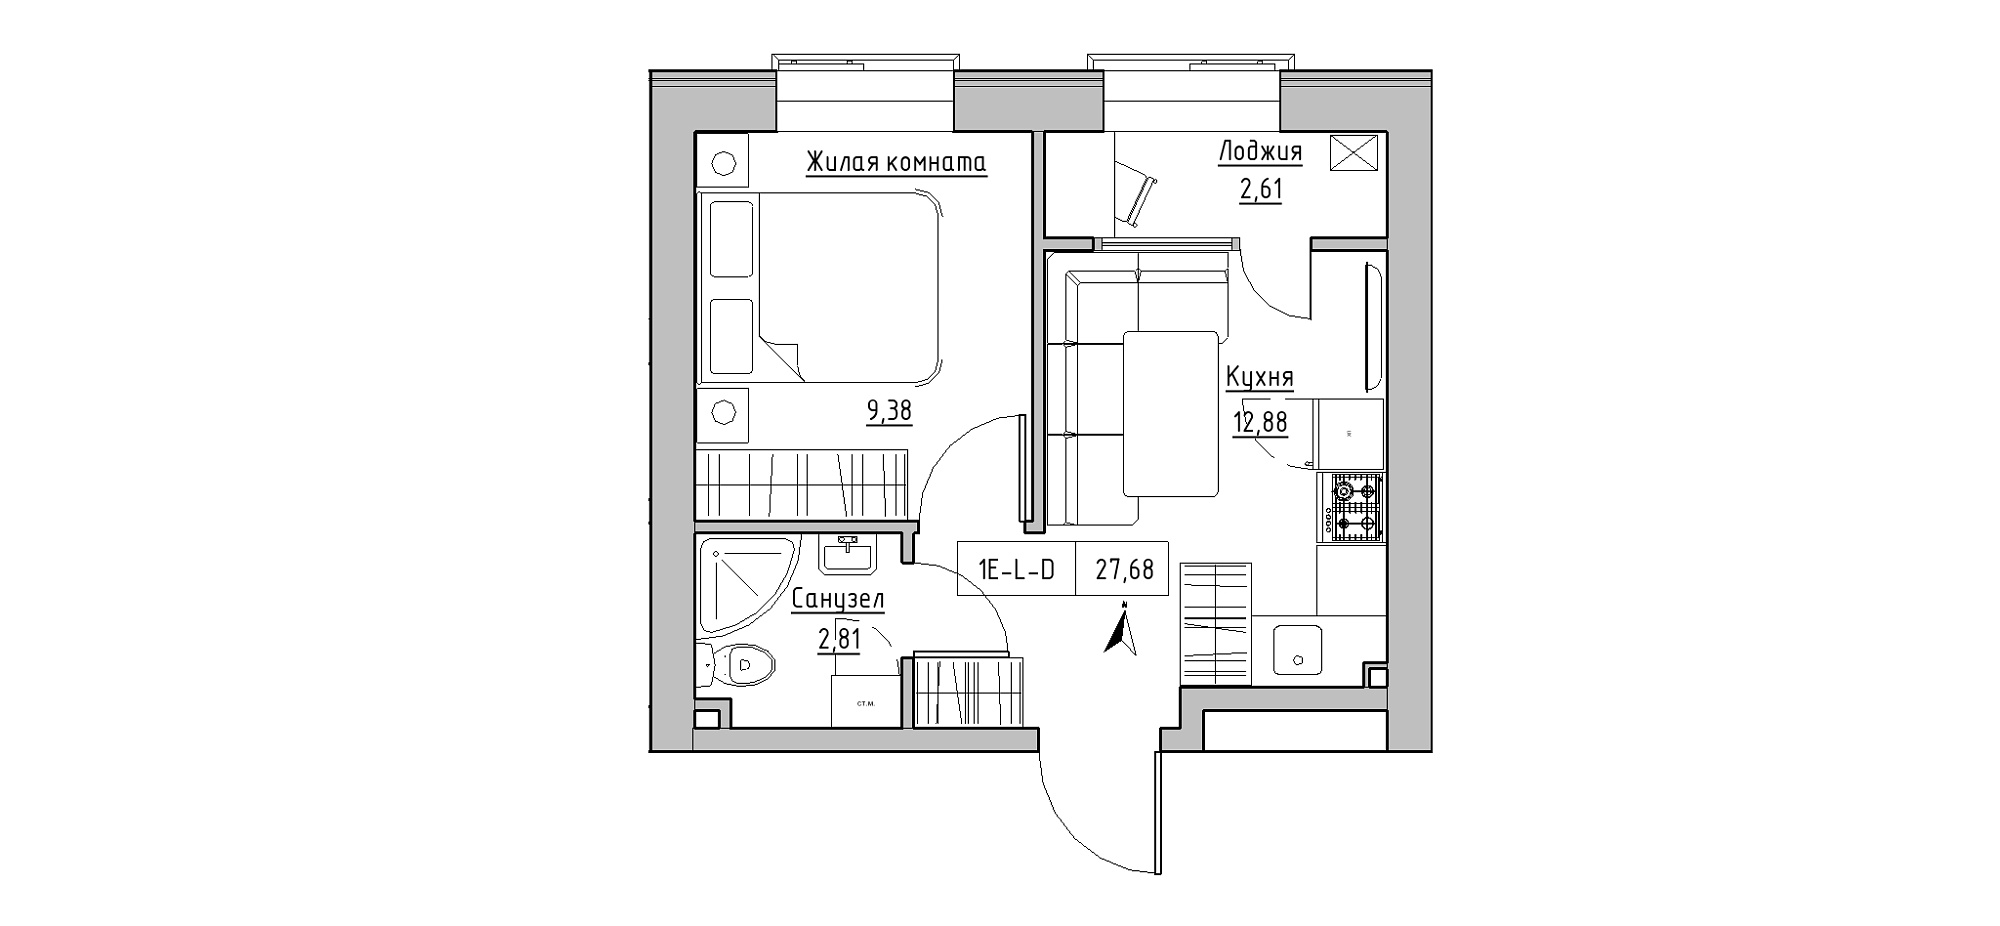 Планування 1-к квартира площею 27.68м2, KS-020-05/0001.